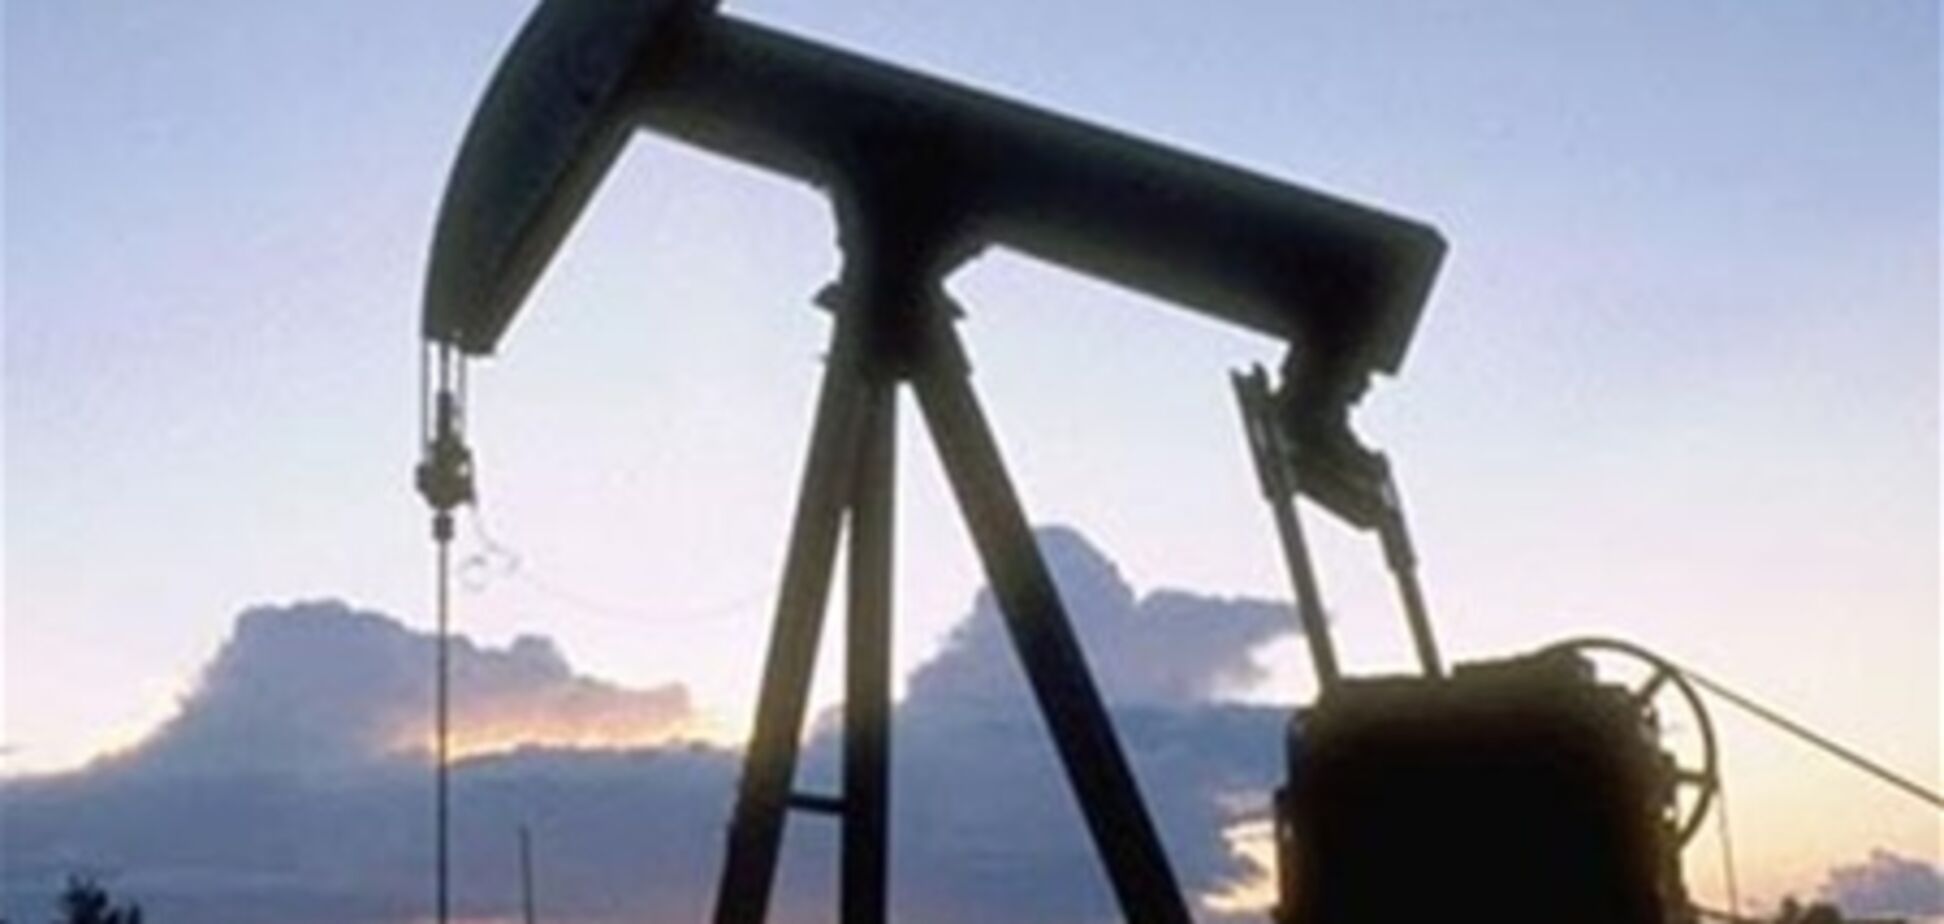 США возобновляют экспорт нефти: эксперты предрекают падение цен